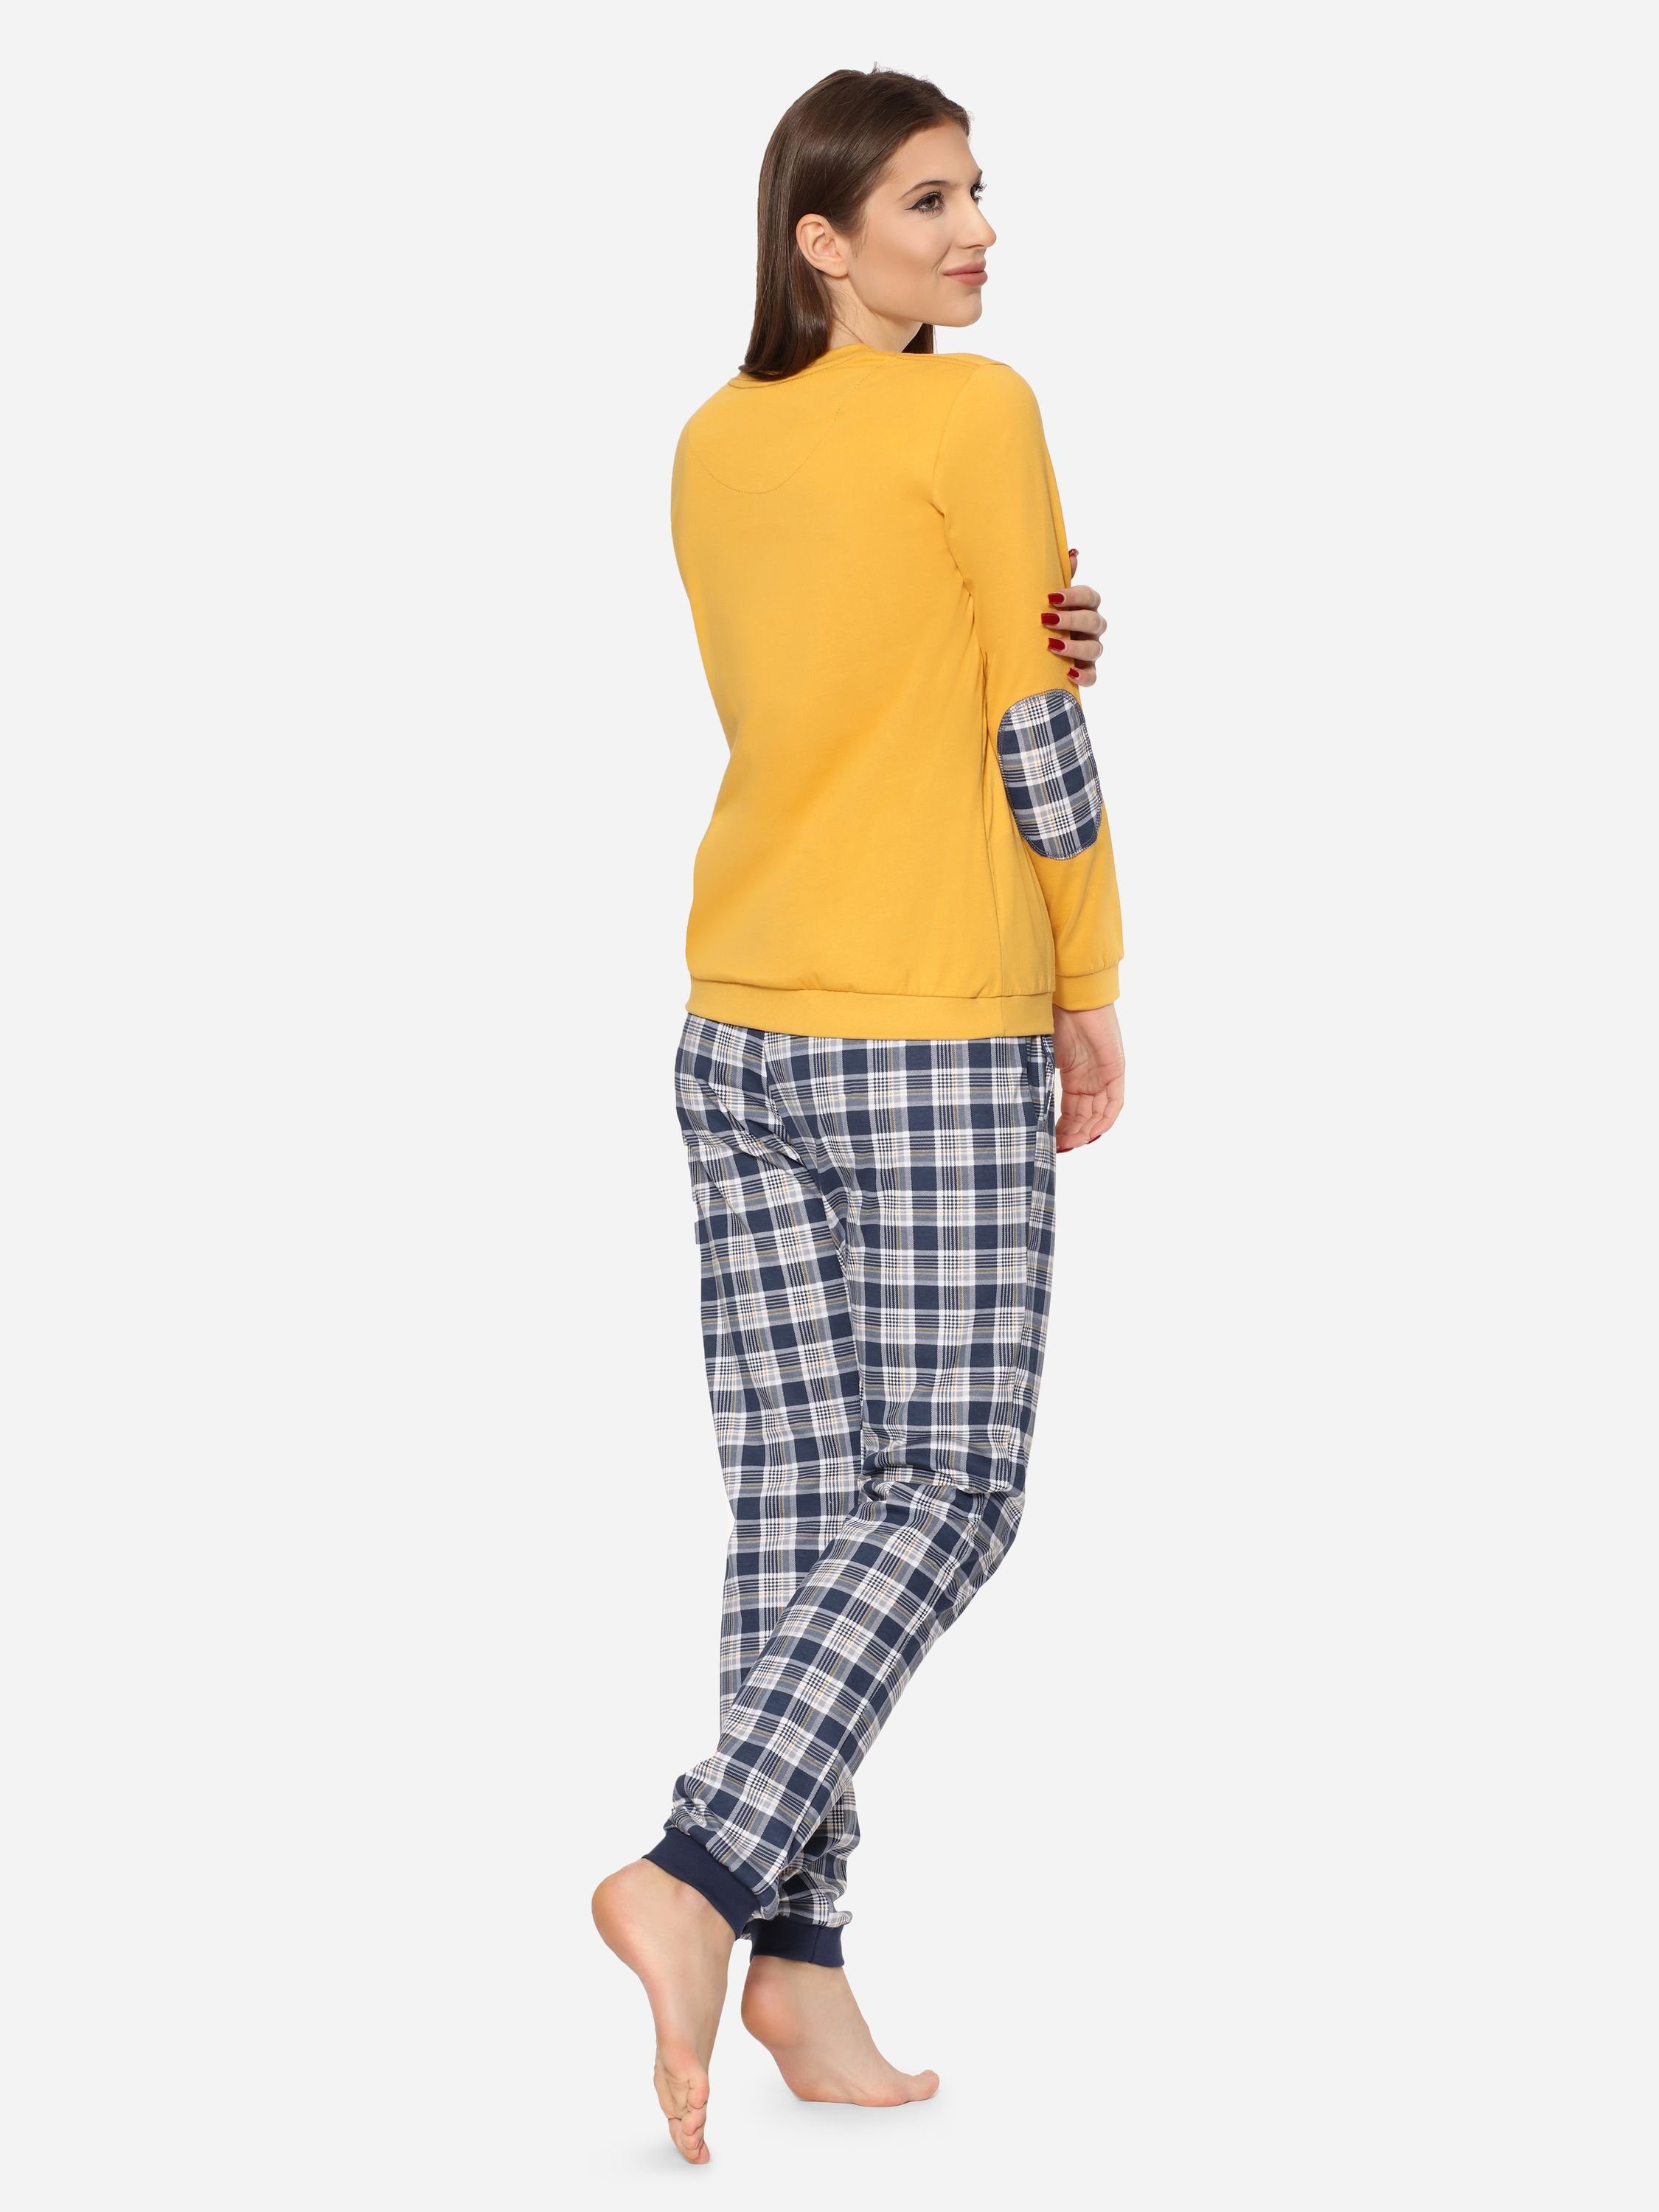 Honig Damen Langarm mit Baumwolle Cornette Pyjama Zweiteiler Rundhals 634 (Swan) Schlafanzug Schlafanzug